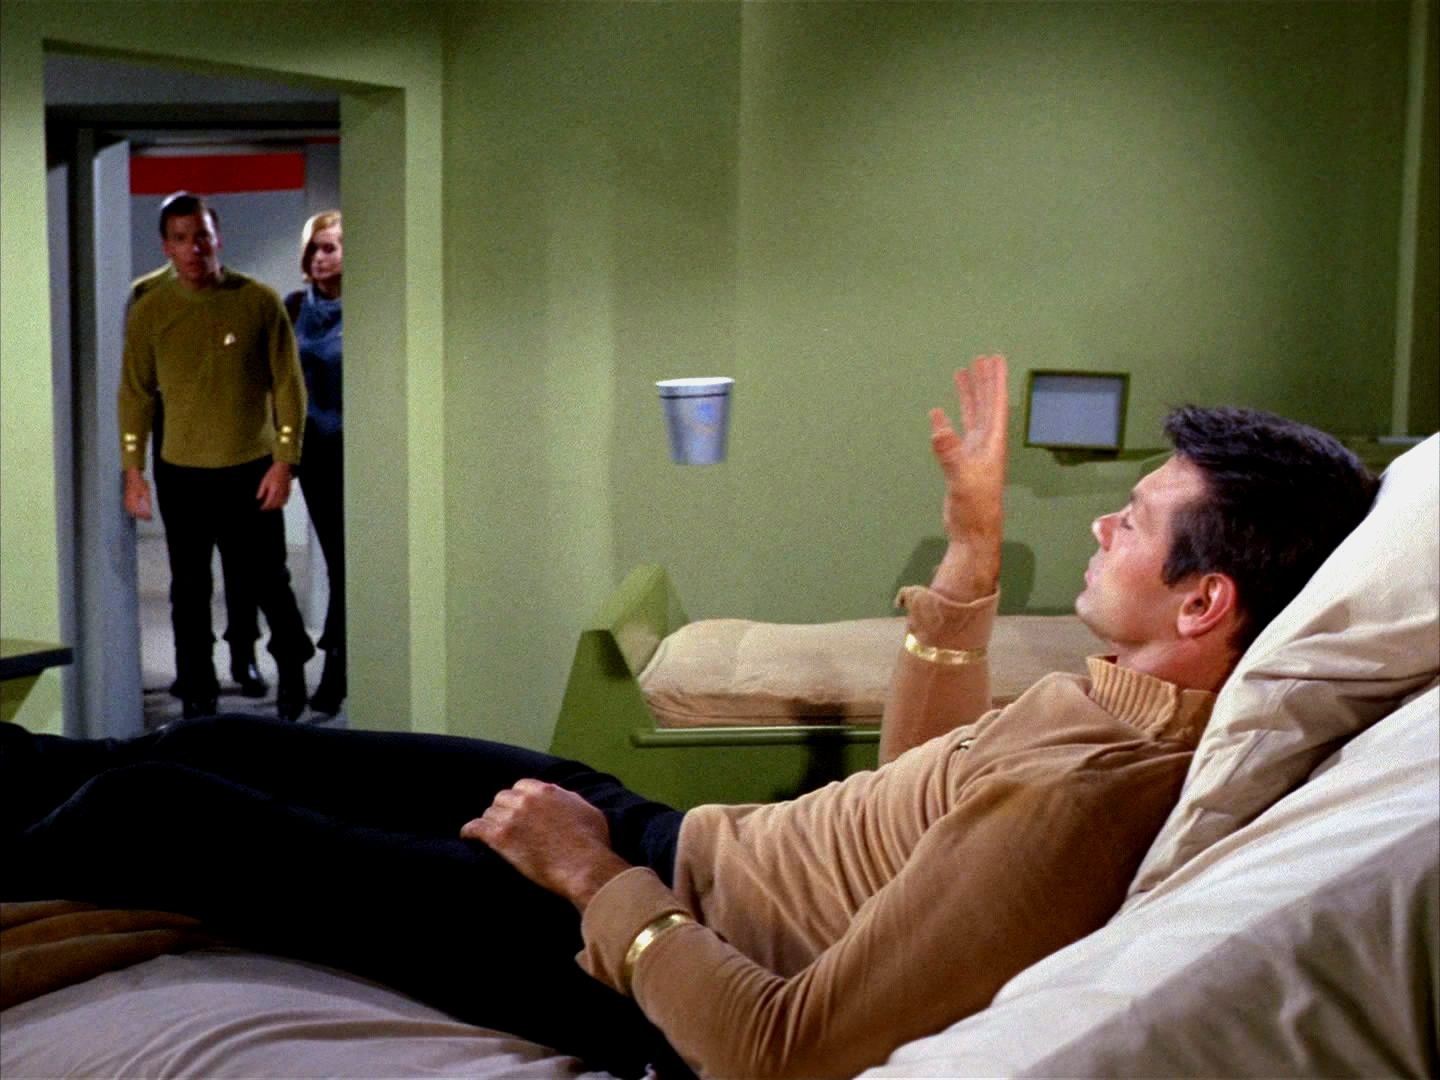 Když začal číst myšlenky a ovládat telekinezi a když se začal chovat přezíravě ke svým kolegům, poznal Spock jako první, že bude moc nebezpečný. Navrhl zabít ho, dokud je čas.